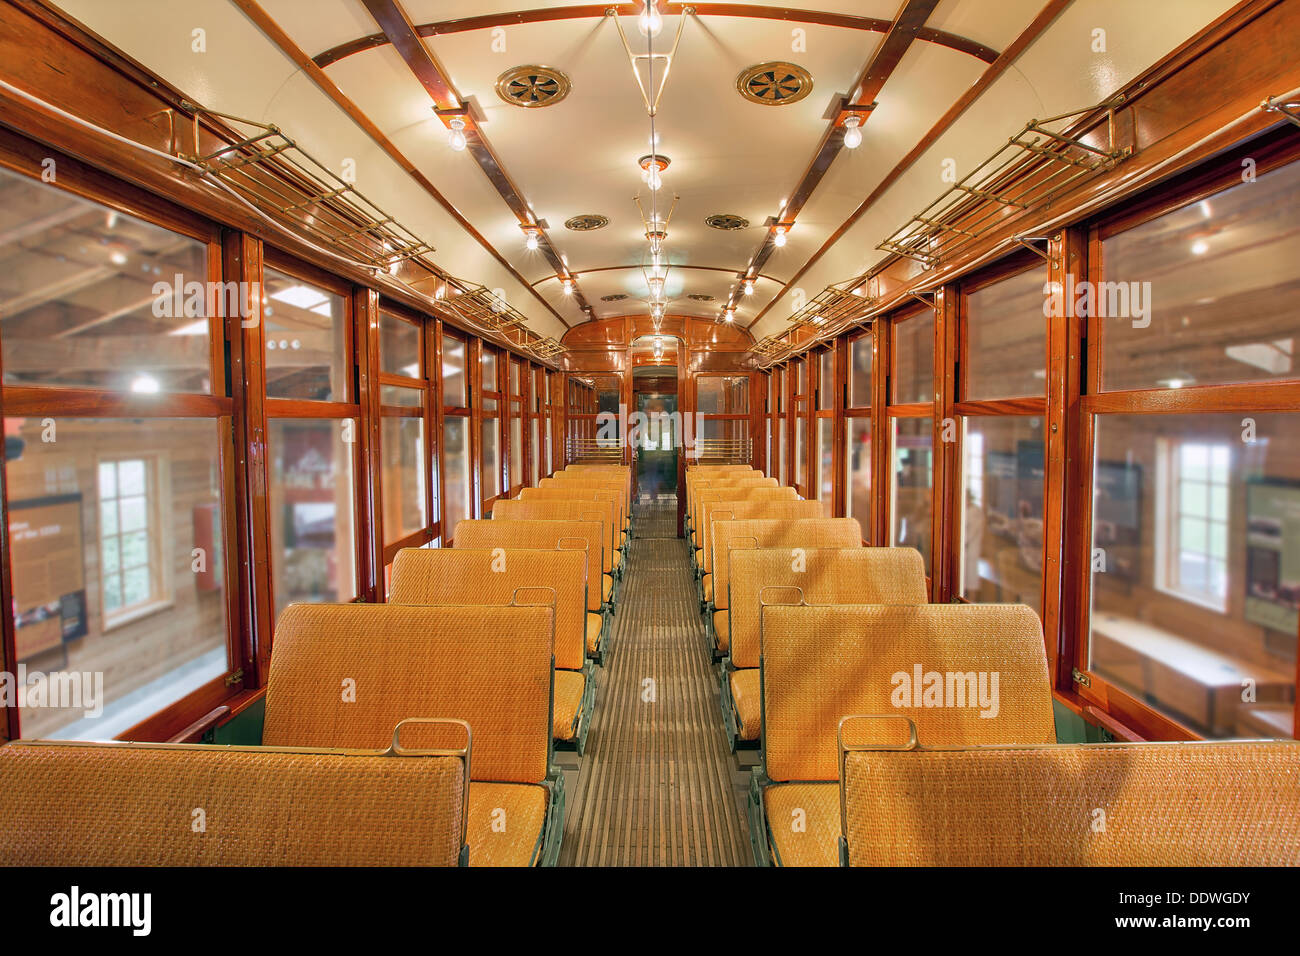 Alte historische restaurierte Straßenbahn Innenraum mit Holz Sitzbänke in Öffentlichkeit Nichtraucher Bereich Stockfoto